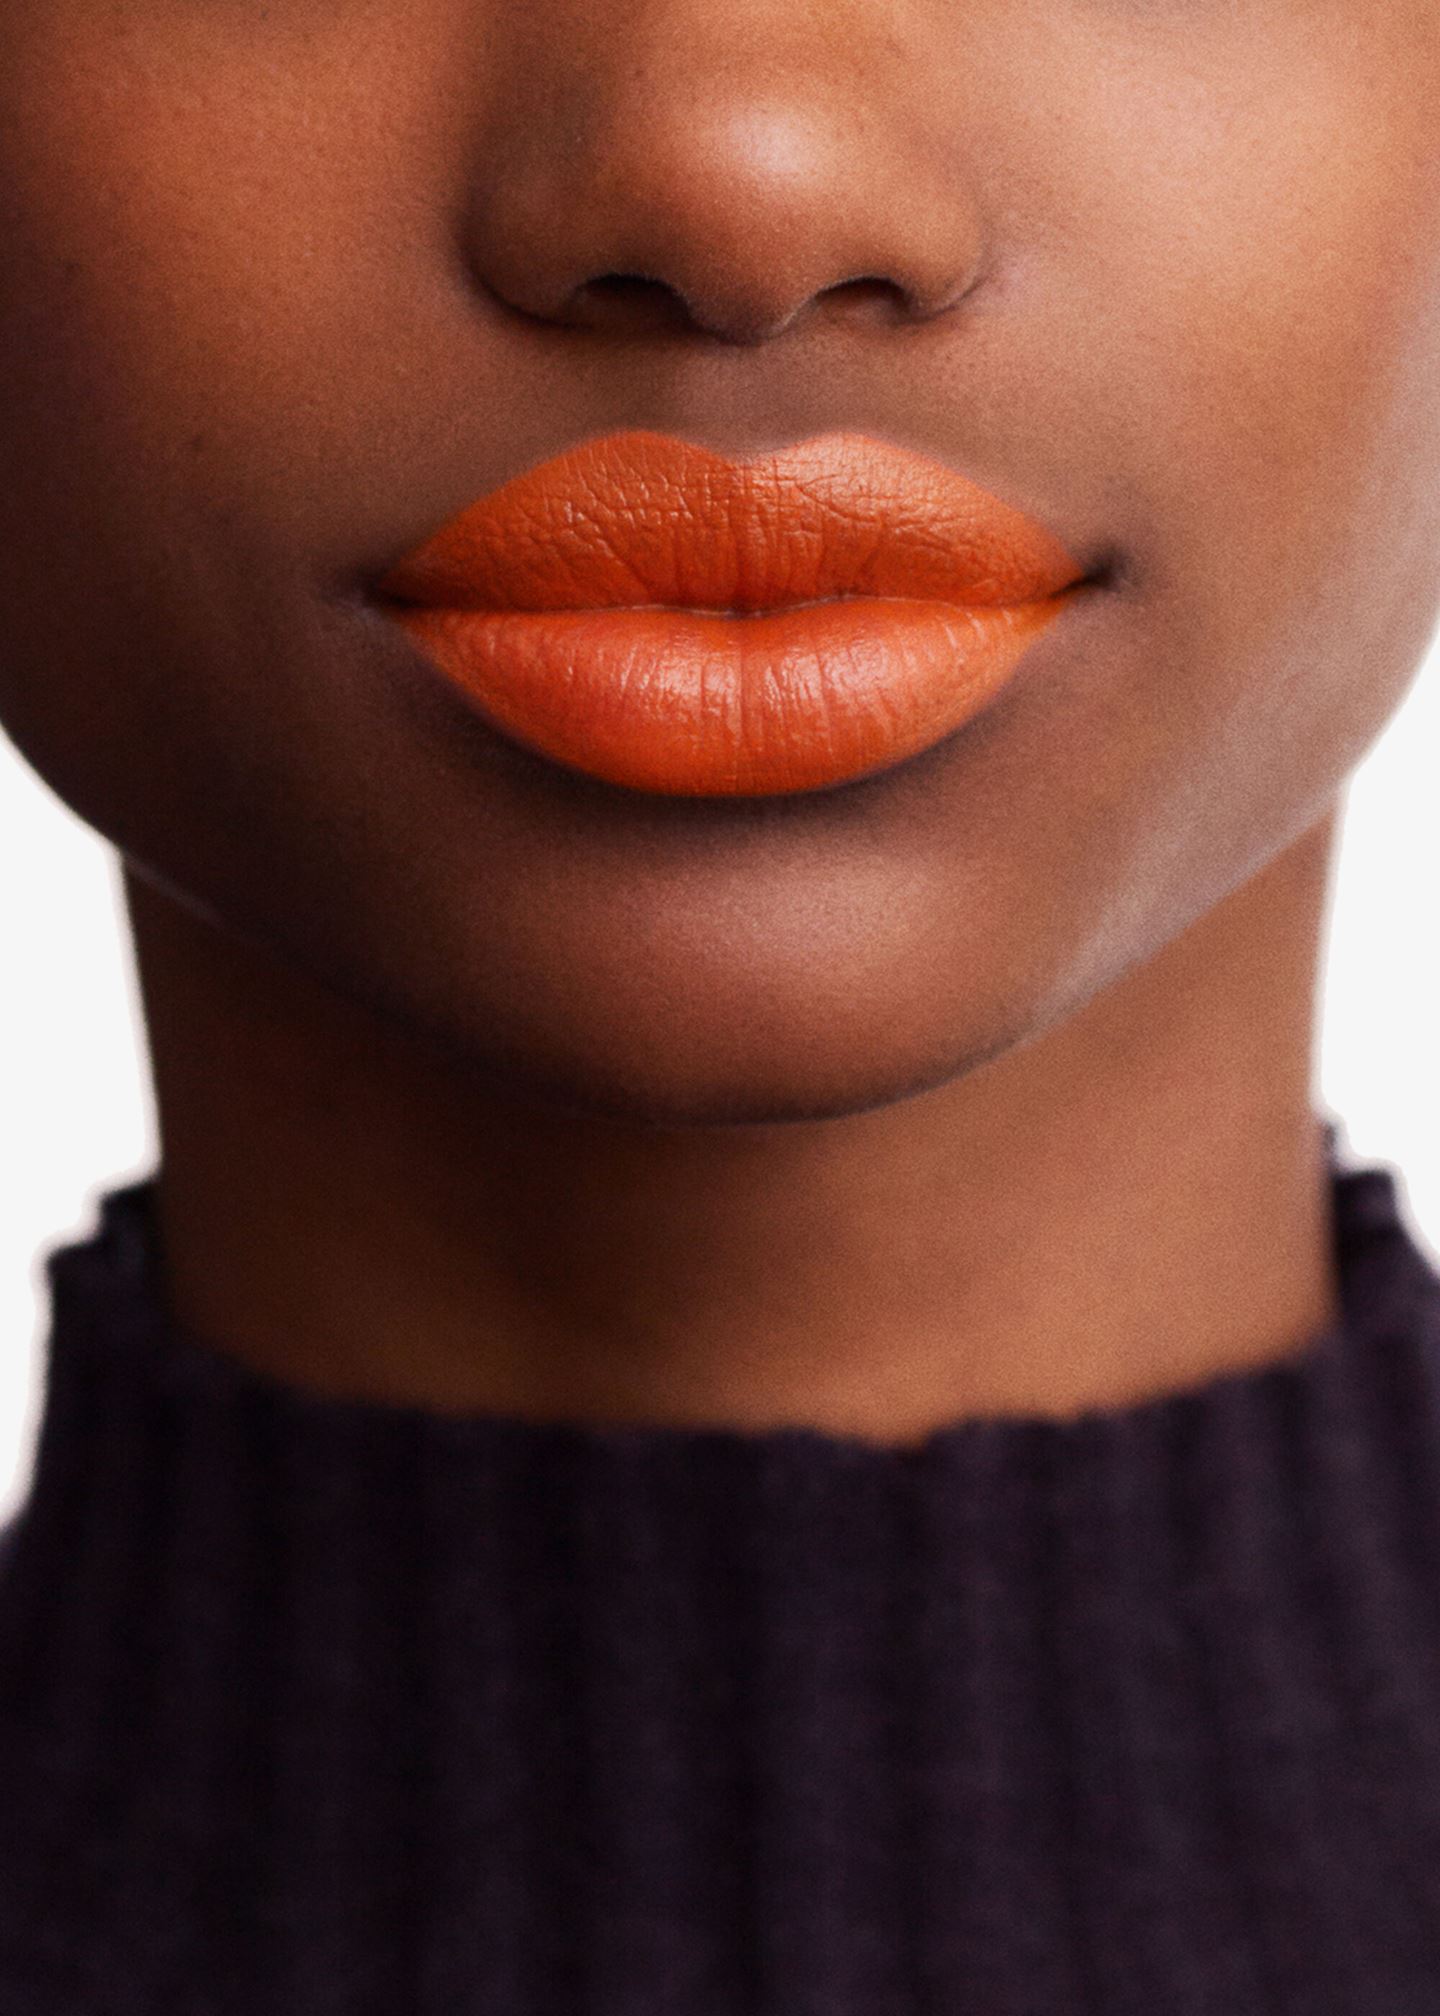 Lippenstift «Rouge Hermès Nachfüllstift Lippenstift seidig glänzend»